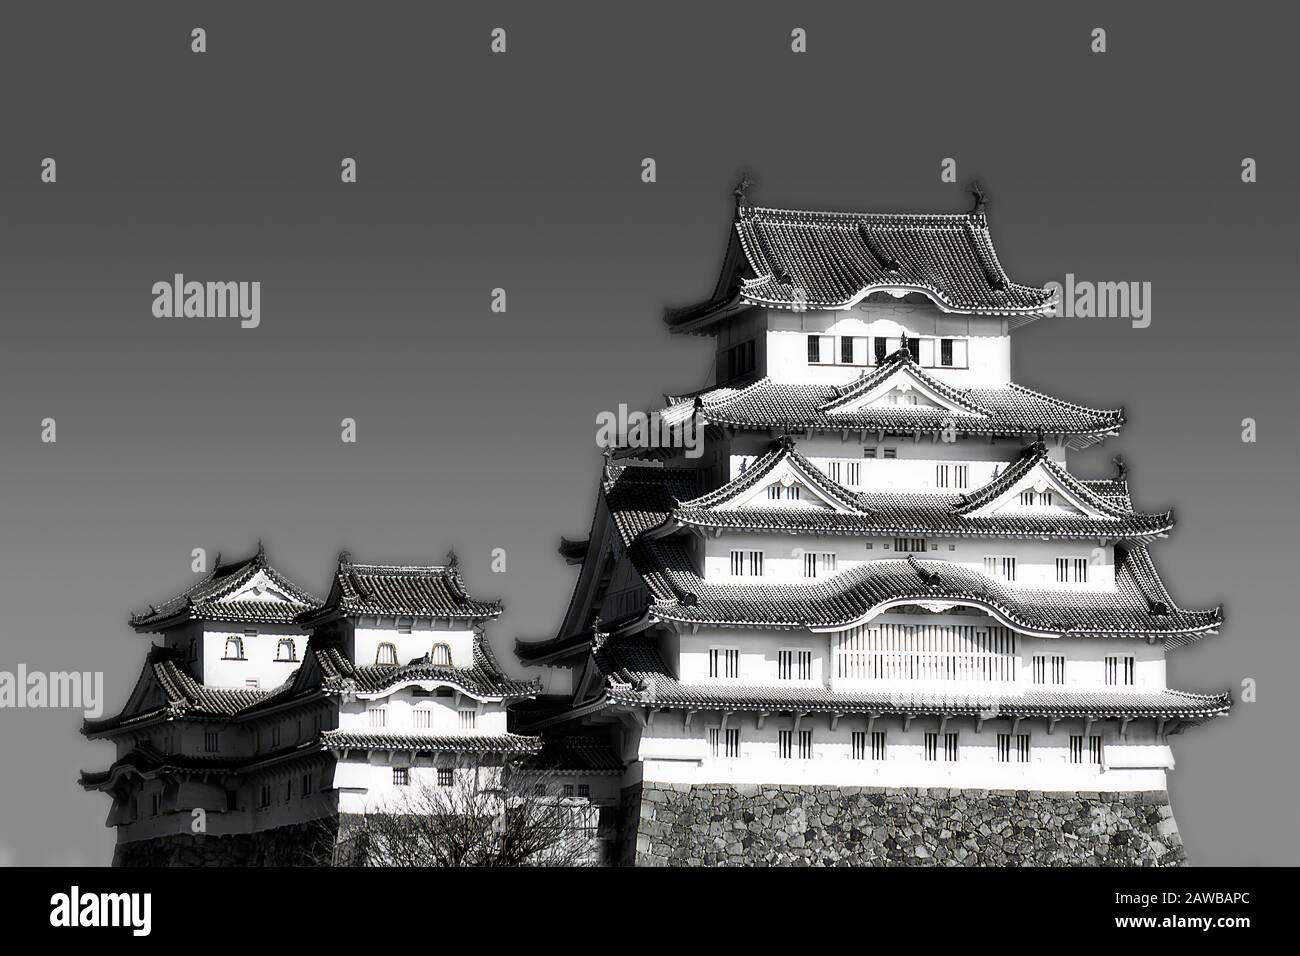 Principale impressione di bianco-nero del castello storico in Giappone vicino alla città di Osaka contro il cielo blu in una luminosa luce solare - tradizionale architettura giapponese. Foto Stock